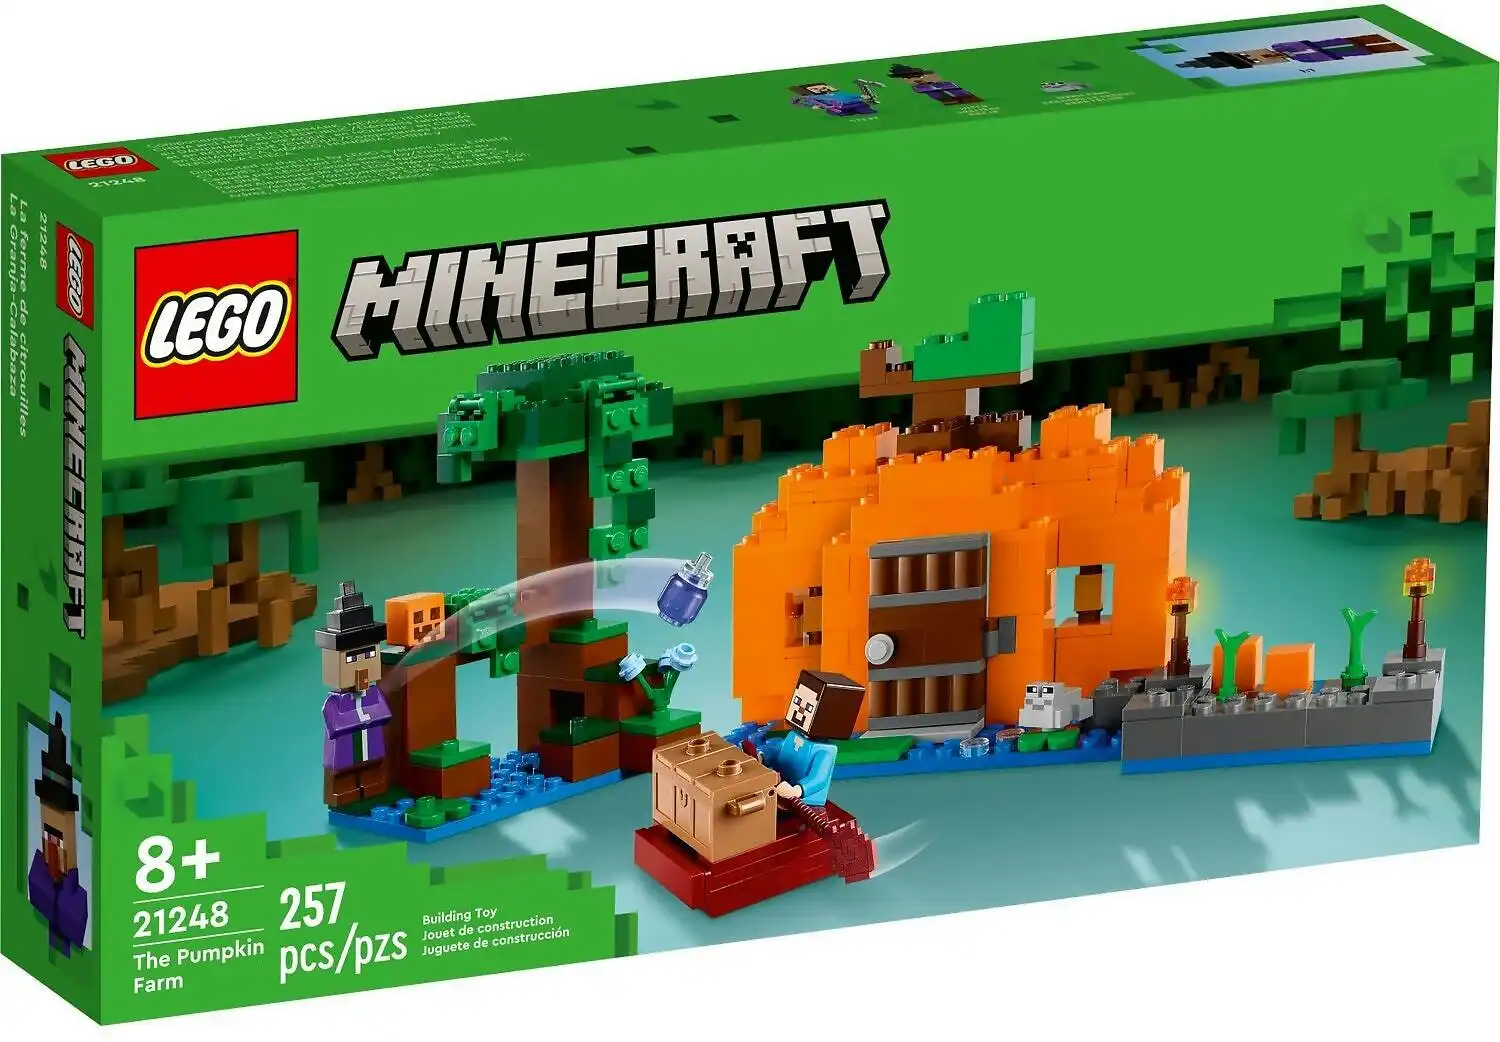 LEGO 21248 The Pumpkin Farm - Minecraft